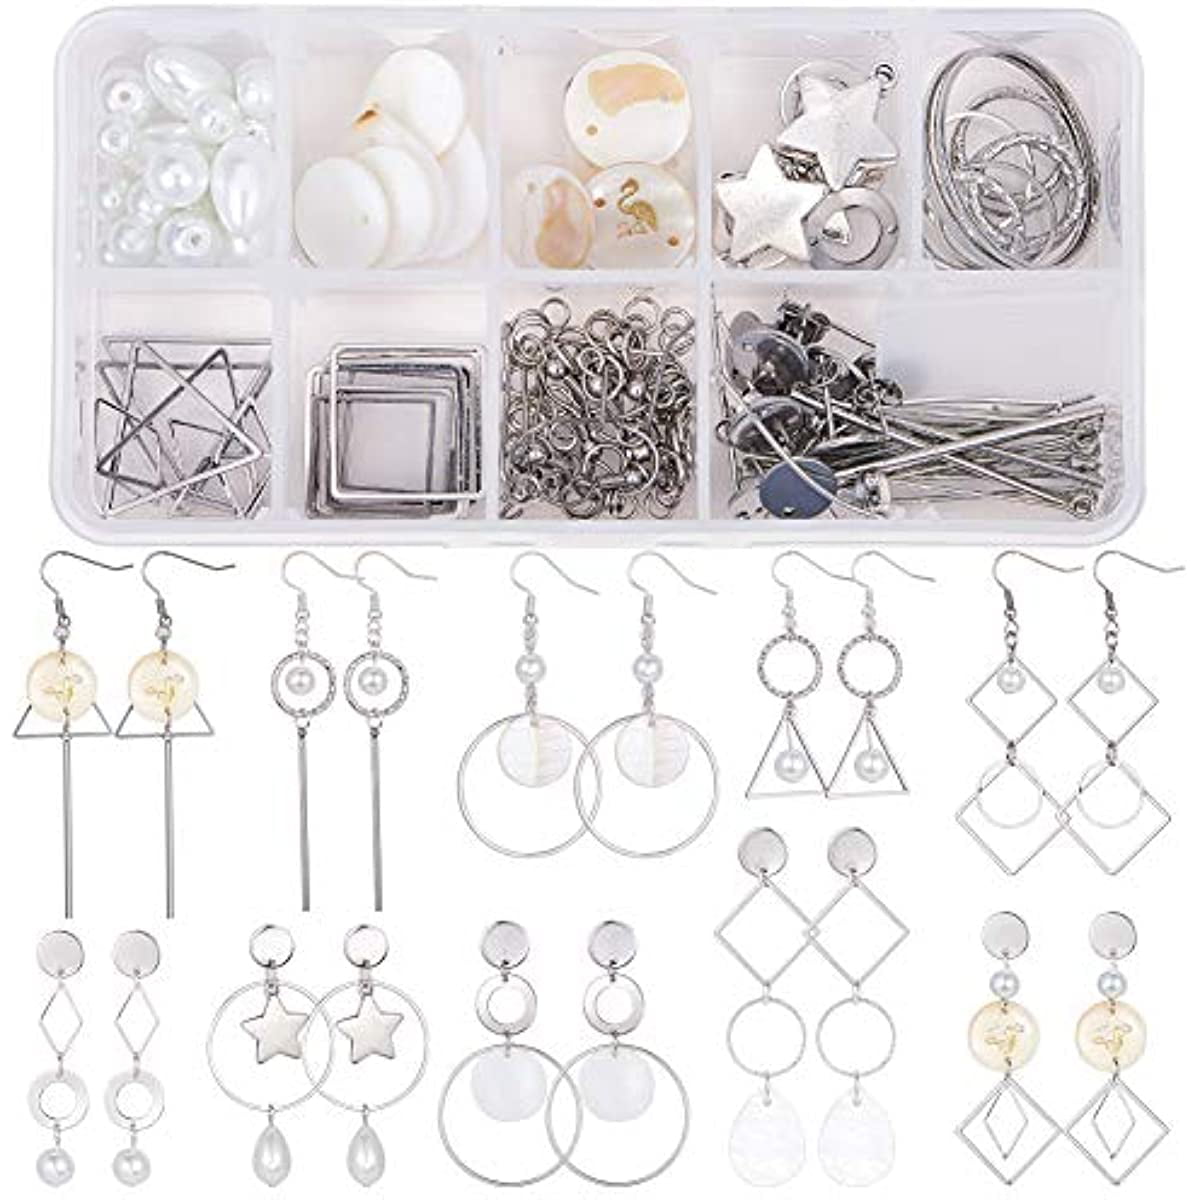 12pcs/set DIY Earring Making - Sea Shell Drop Dangle Charm Hoop Earrings  Mixed